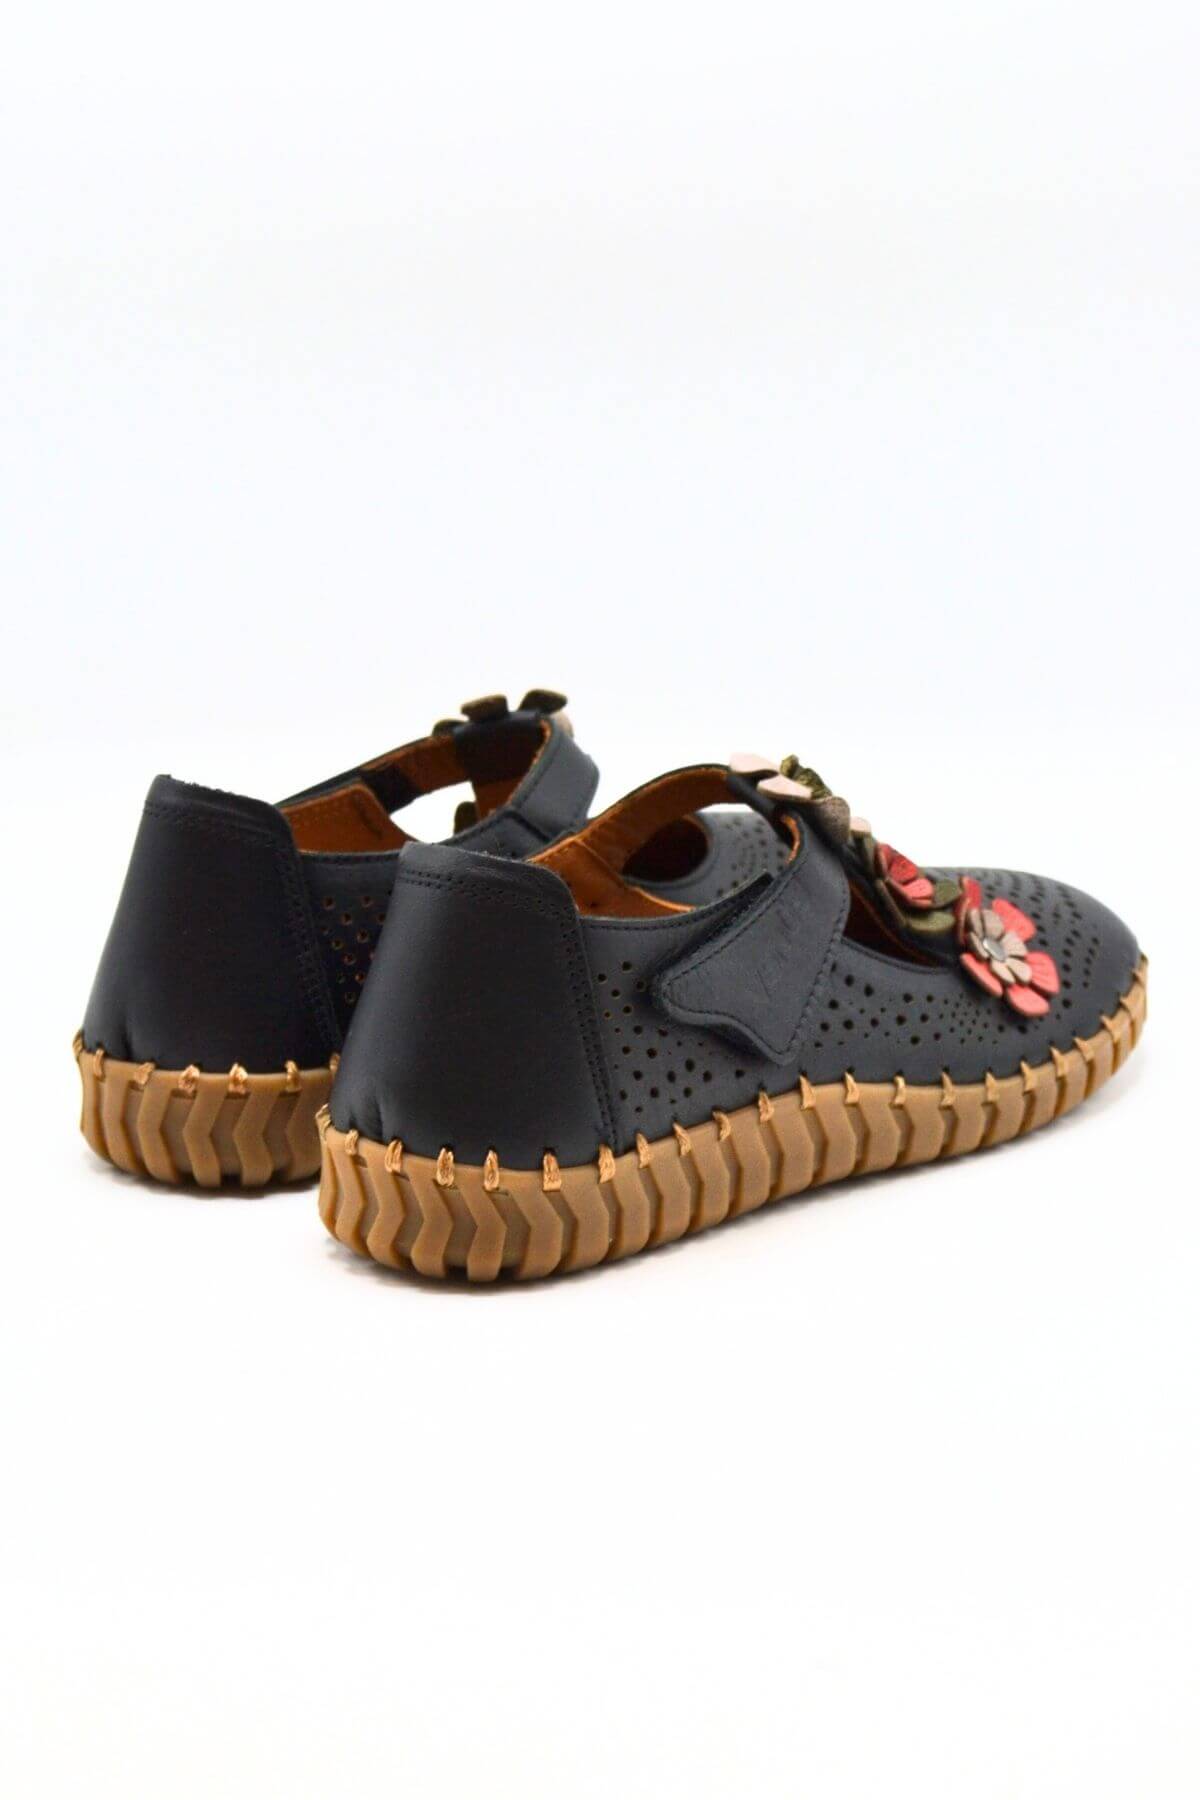 Kadın Comfort Deri Ayakkabı Siyah 2010718Y - Thumbnail